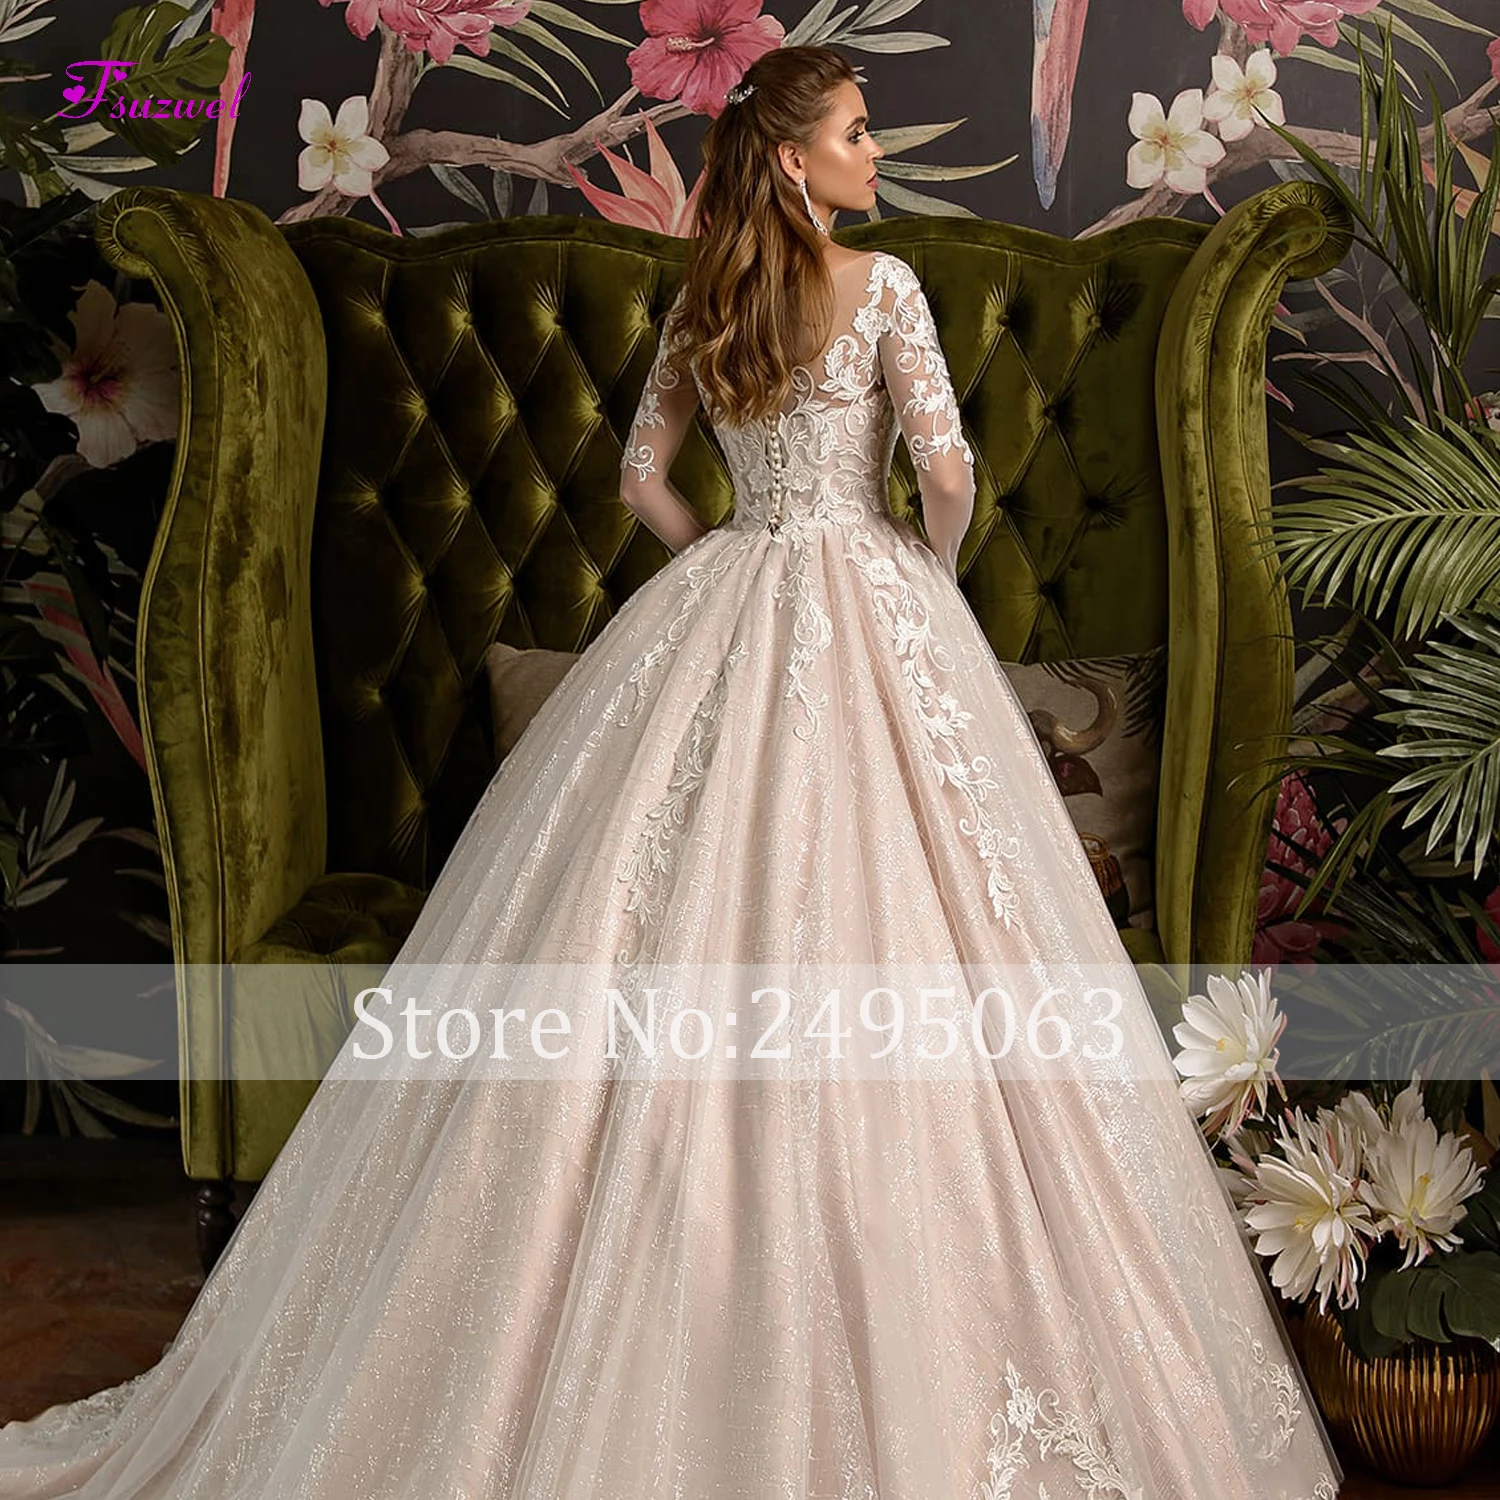 Fsuzwel Роскошные Аппликации суд Поезд бальное платье Свадебные платья Элегантный Совок шеи с длинным рукавом платье для невесты принцессы размера плюс